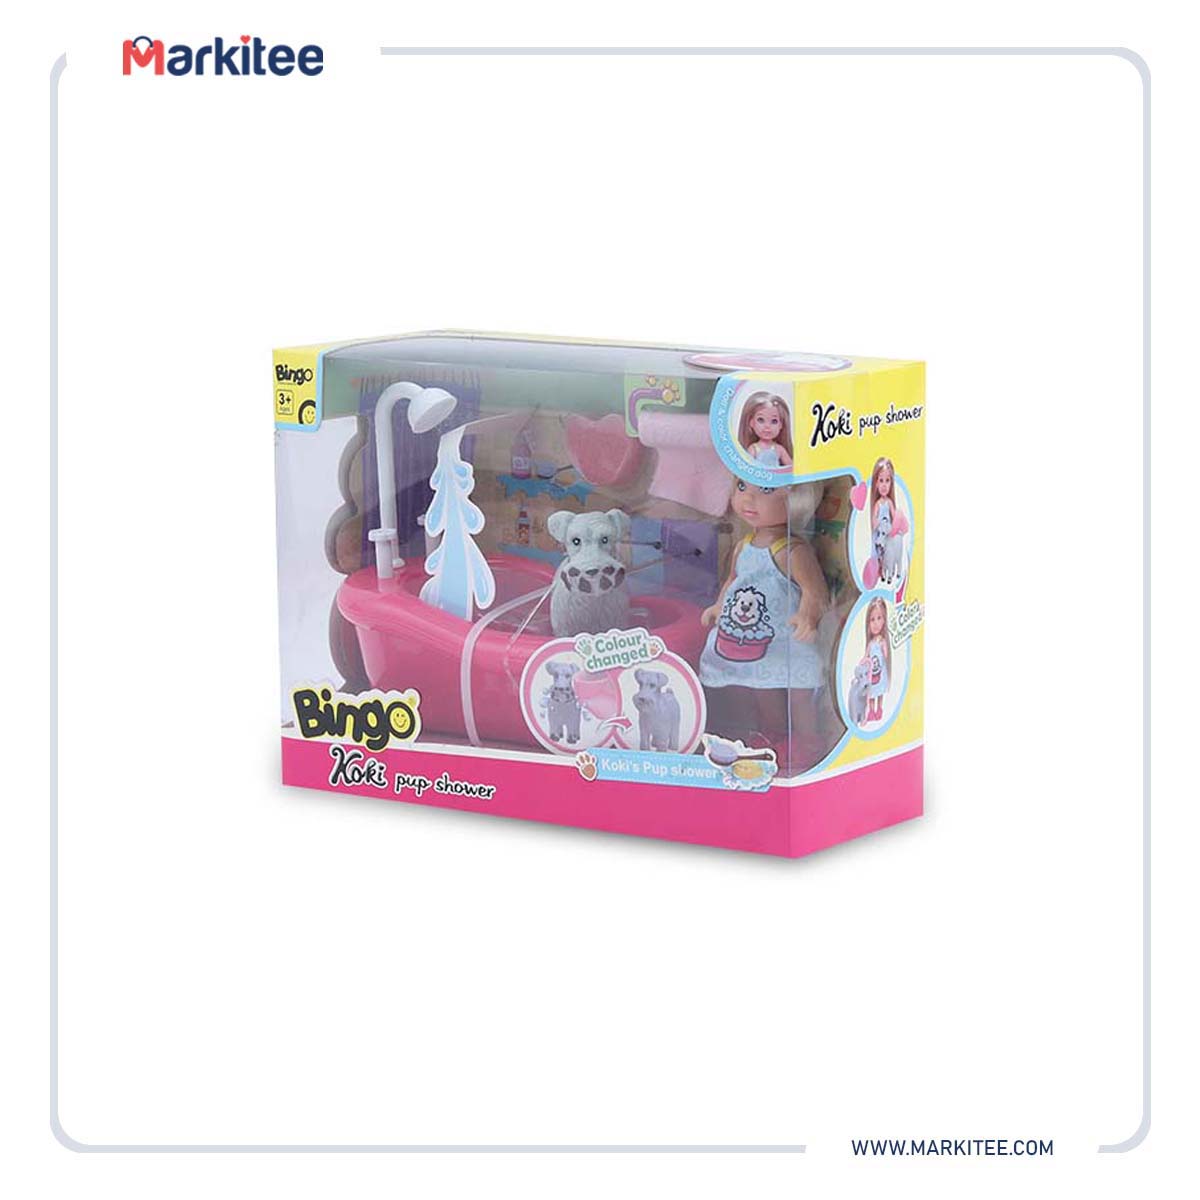 ماركيتي-markitee-20220610121014714_Markitee-Toys-HK0110(1).jpg